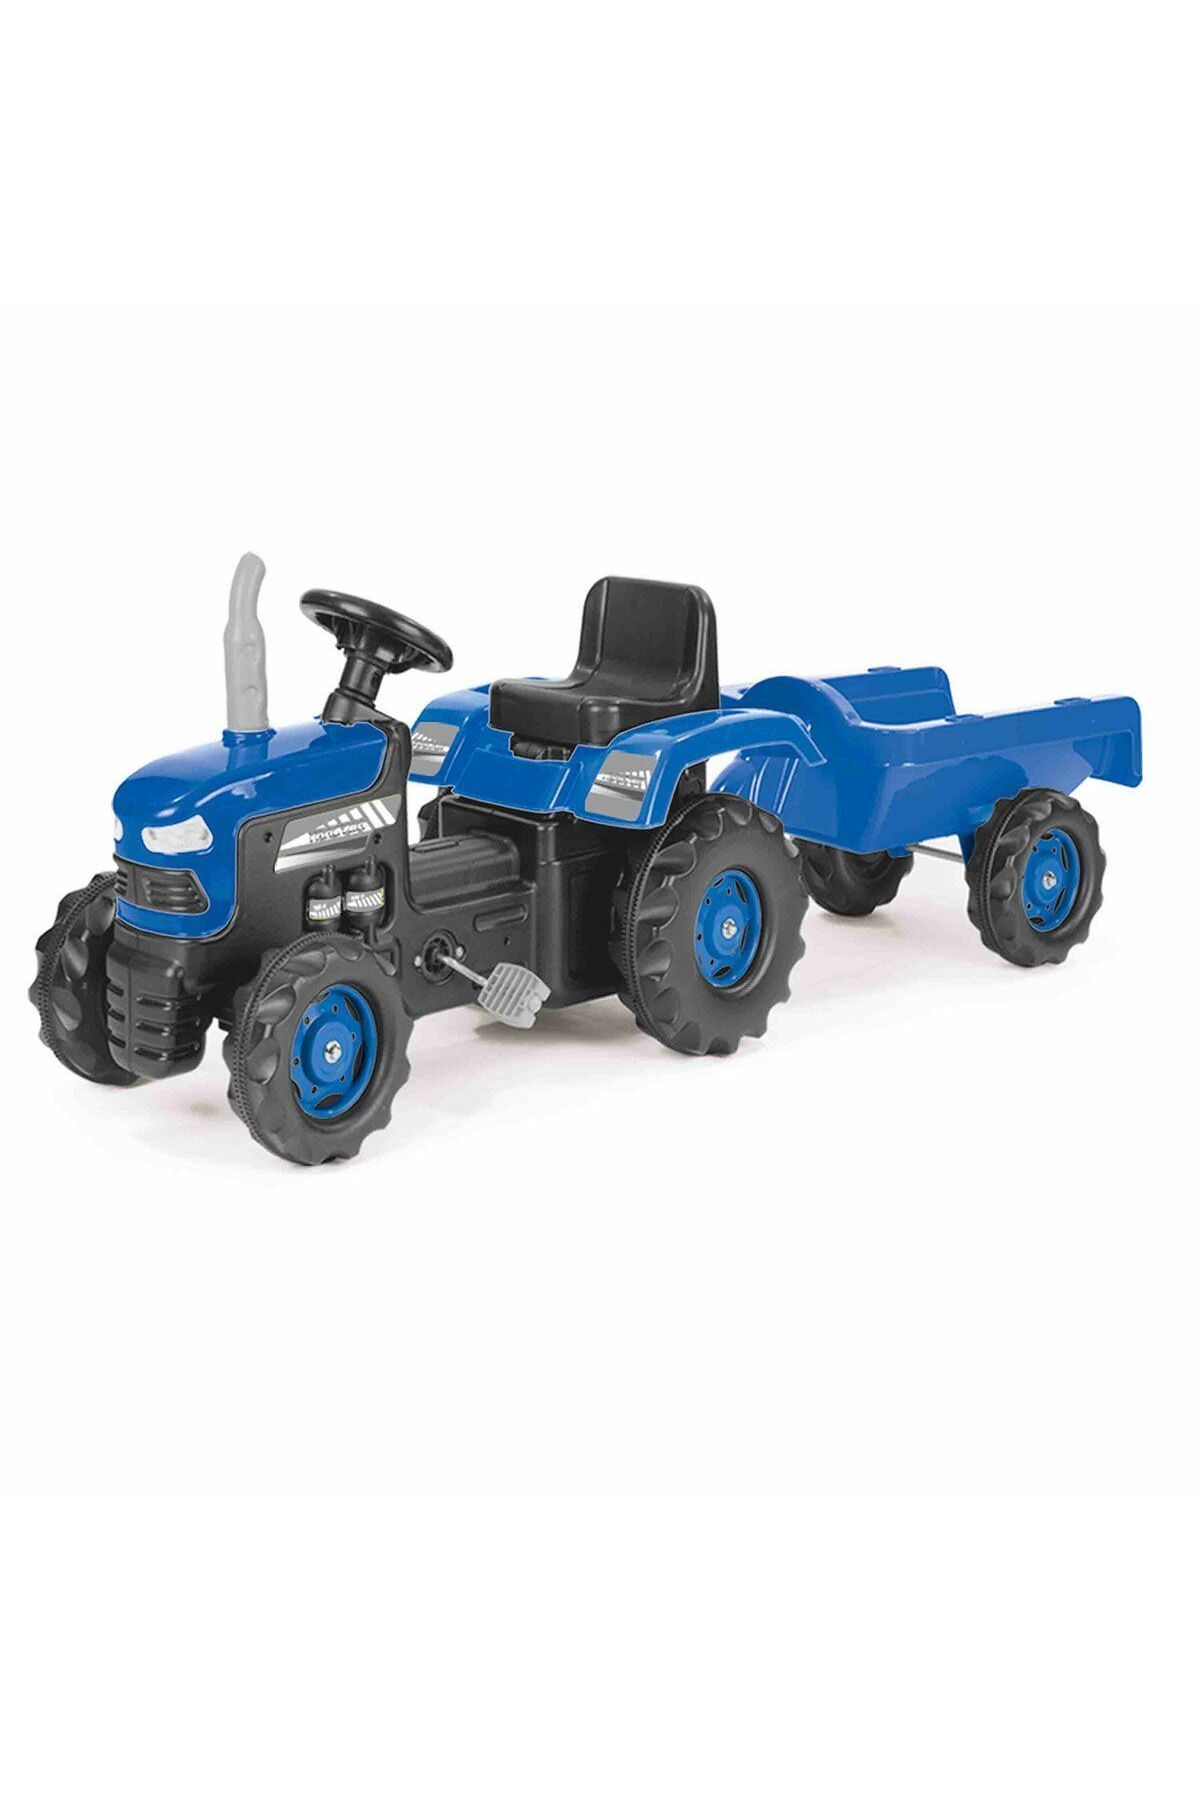 DOLU OYUNCAK 8253 Dolu Römorklu Pedallı Traktör -Mavi